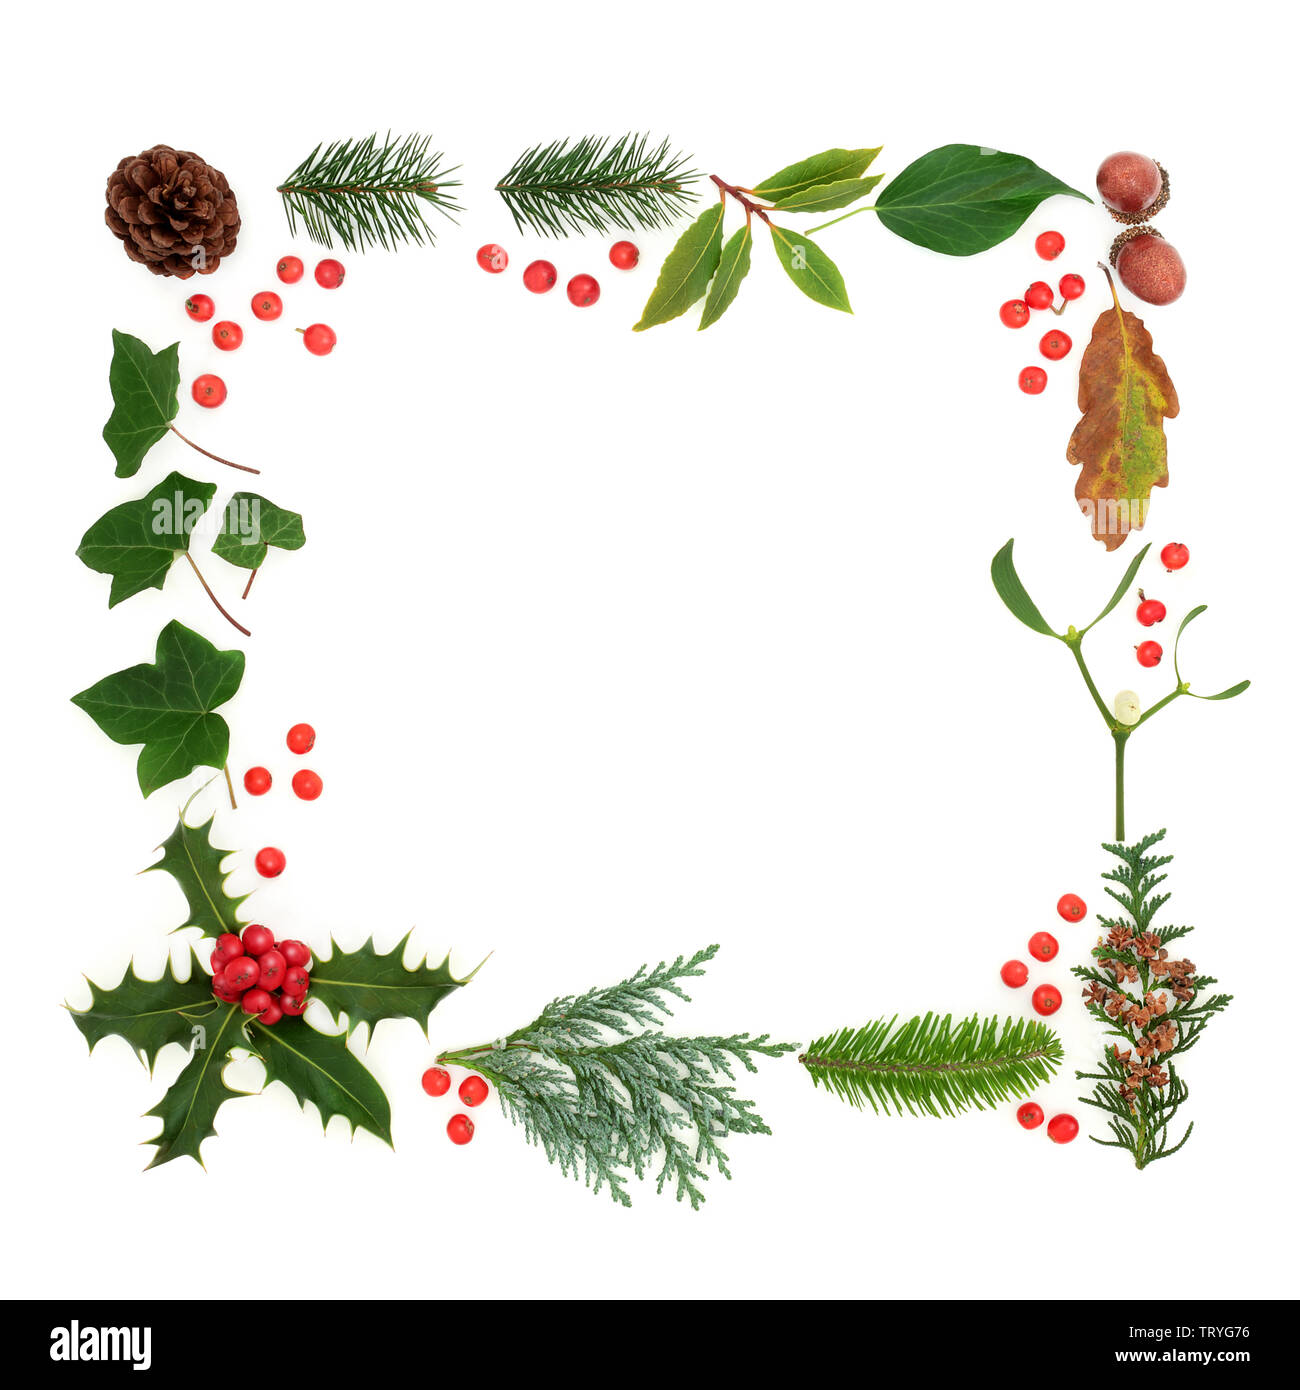 Winter und Flora & Fauna mit Losen roten Stechpalme Beeren bilden ein Quadrat auf weißem Hintergrund Grenze. Traditionelle natürliche Symbole für die Wintersaison. Stockfoto